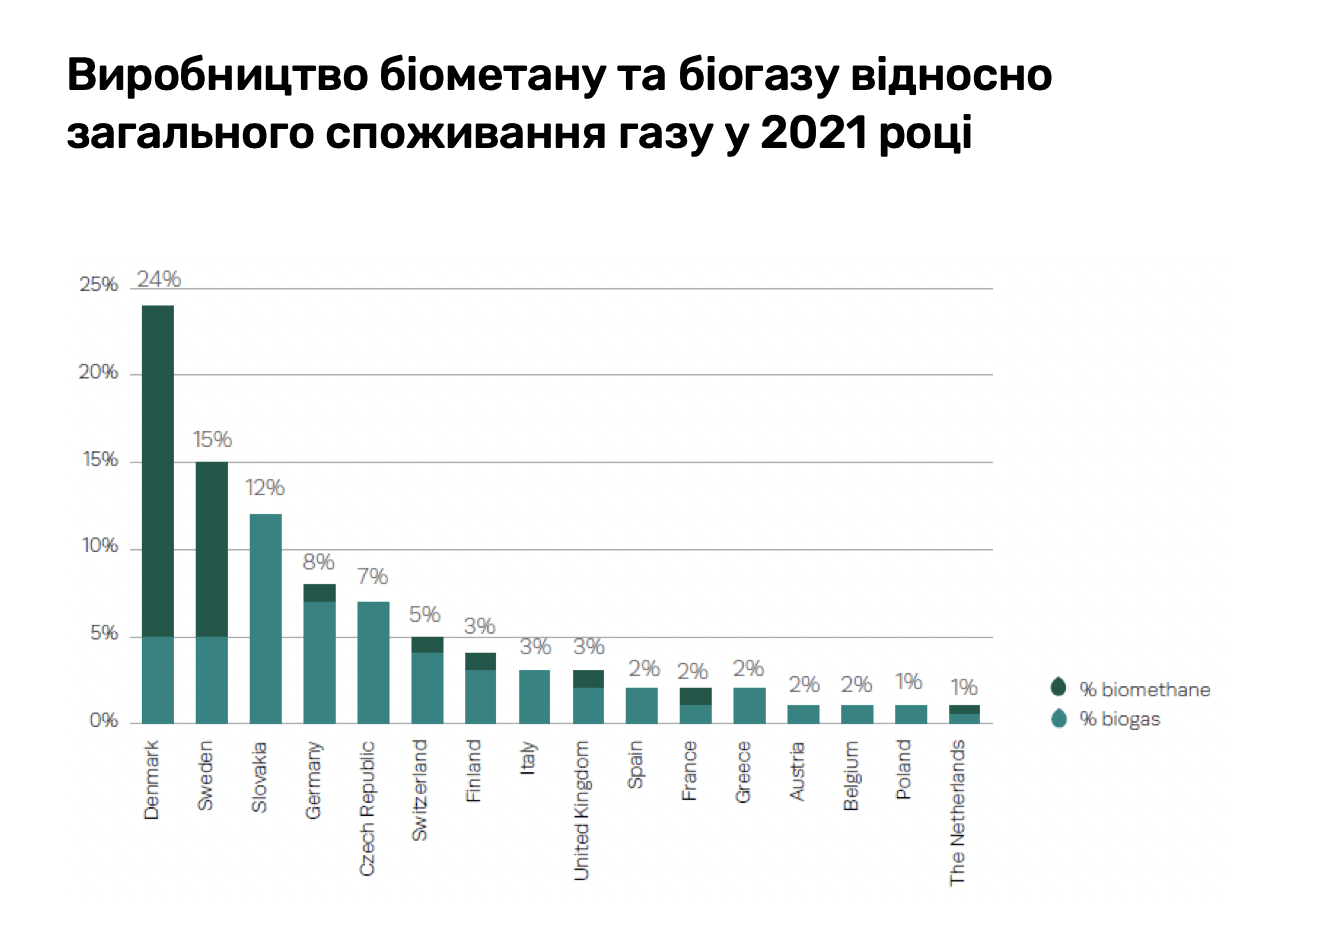 Виробництво біометану в європейських країнах у 2021 році (ГВт·год), ТОП-10 країн